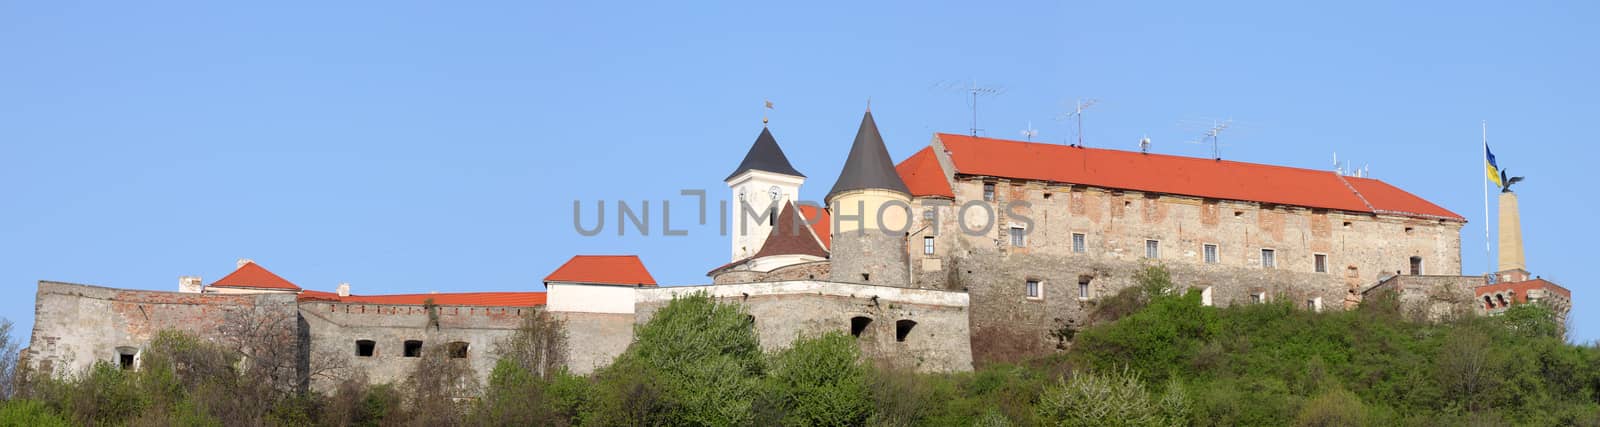 panoramic view of The Palanok Castle in Mukachevo